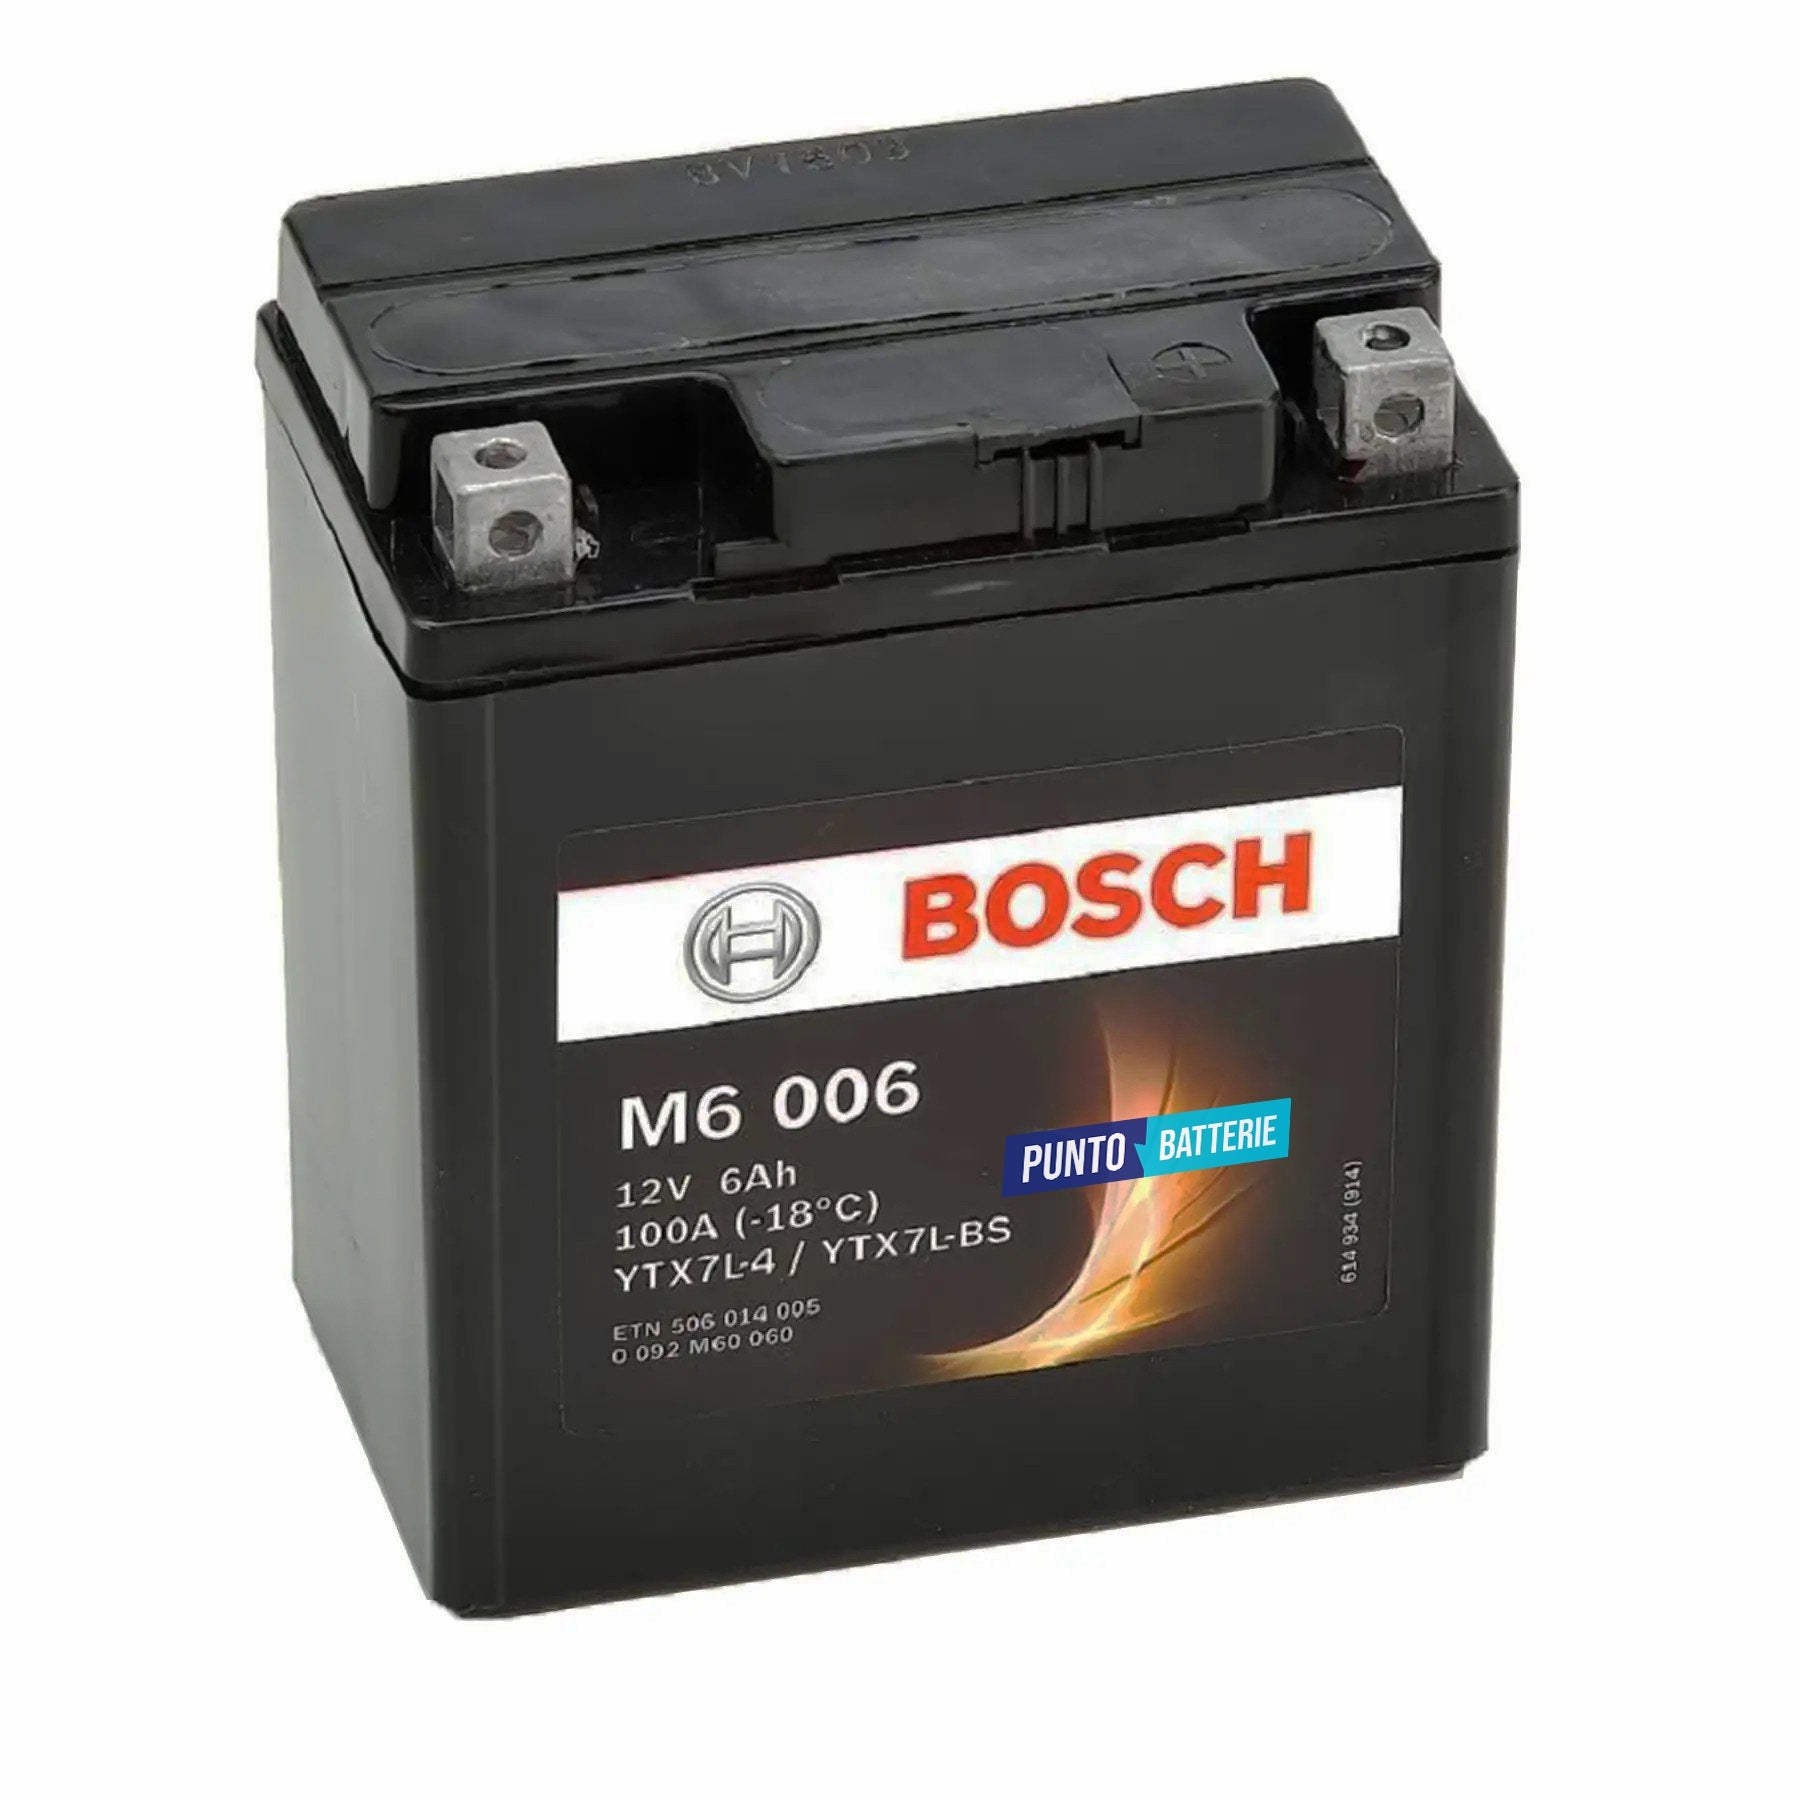 Batteria originale Bosch M6 M6006, dimensioni 165 x 130 x 176, polo positivo a destra, 12 volt, 6 amperora, 100 ampere. Batteria per moto, scooter e powersport.